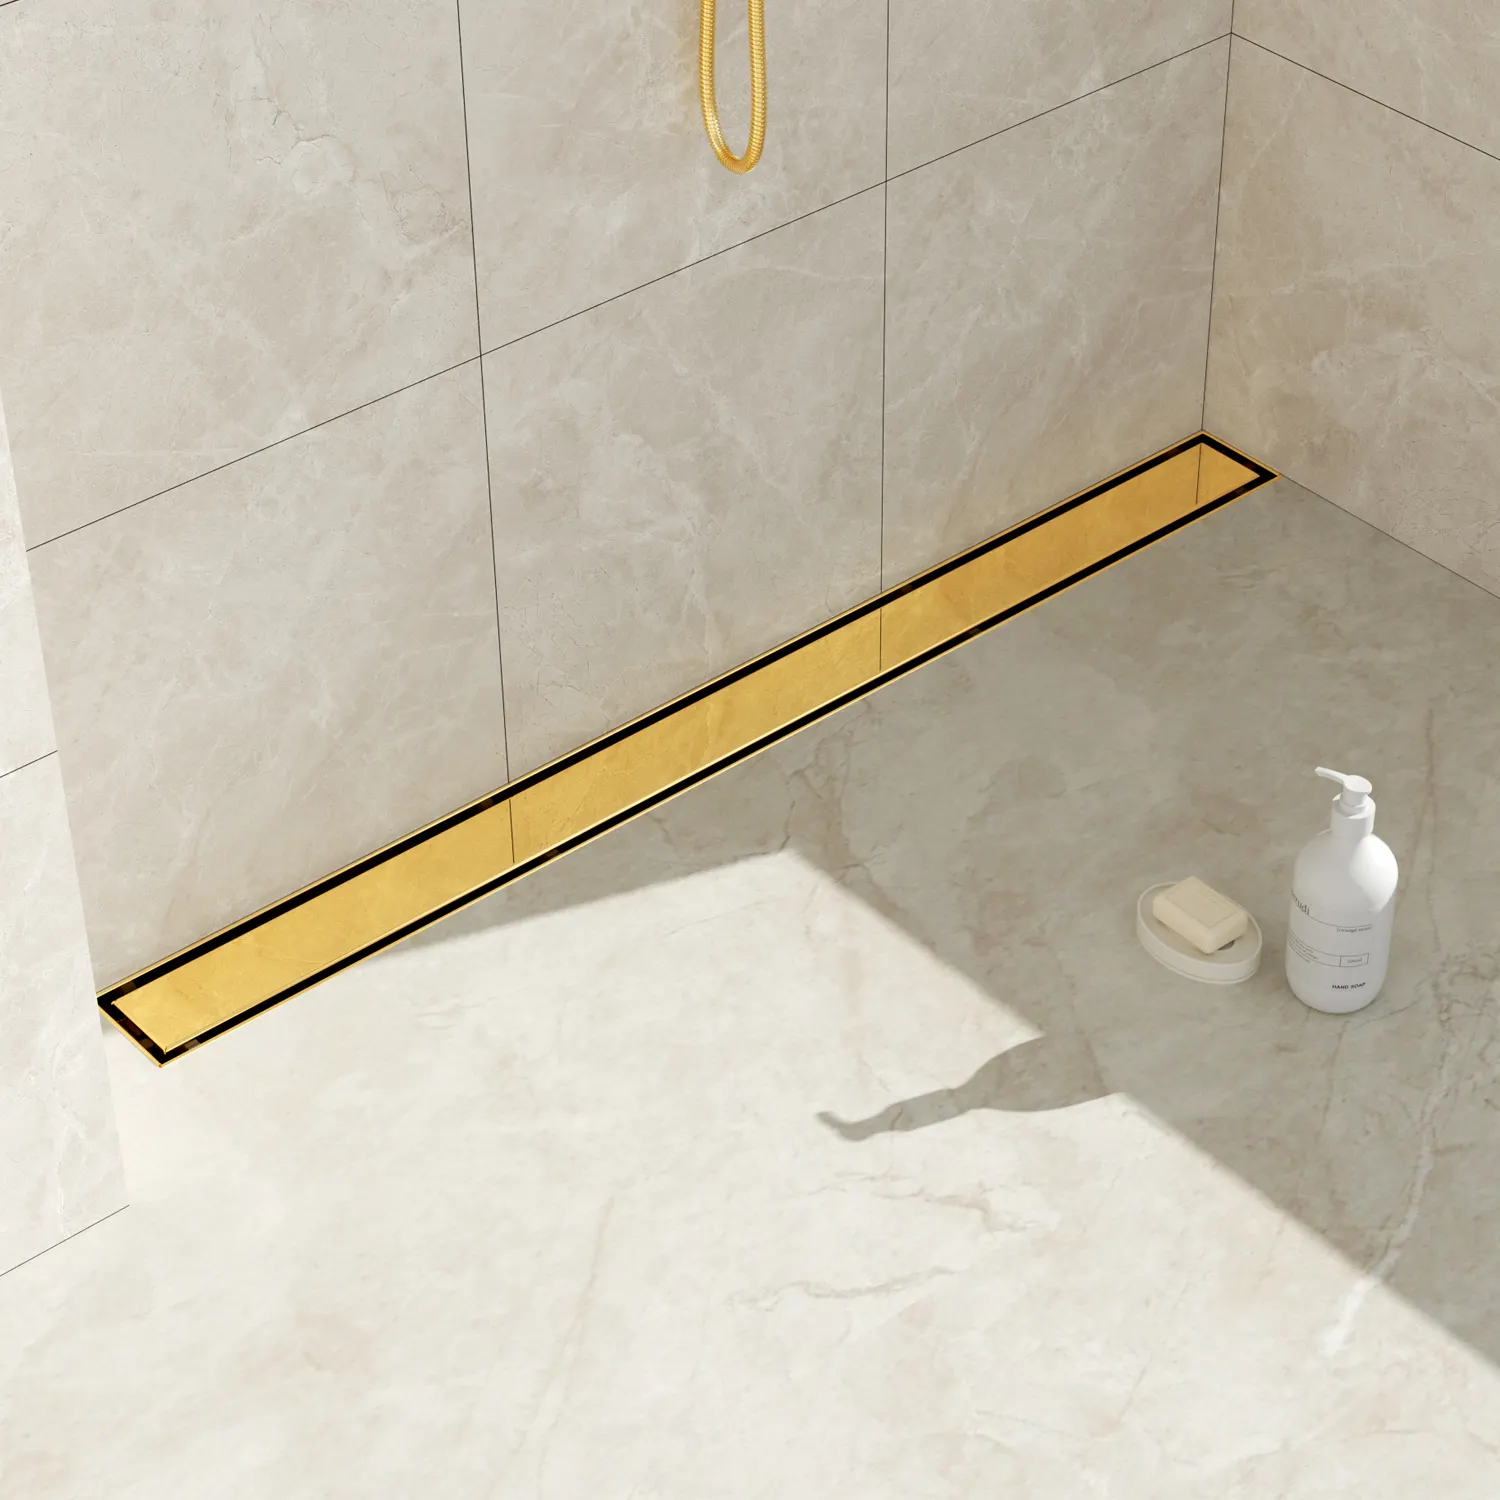 バスルーム用の回転可能なベースを備えたシームレスな水管理高品質のシャワードレンオプション